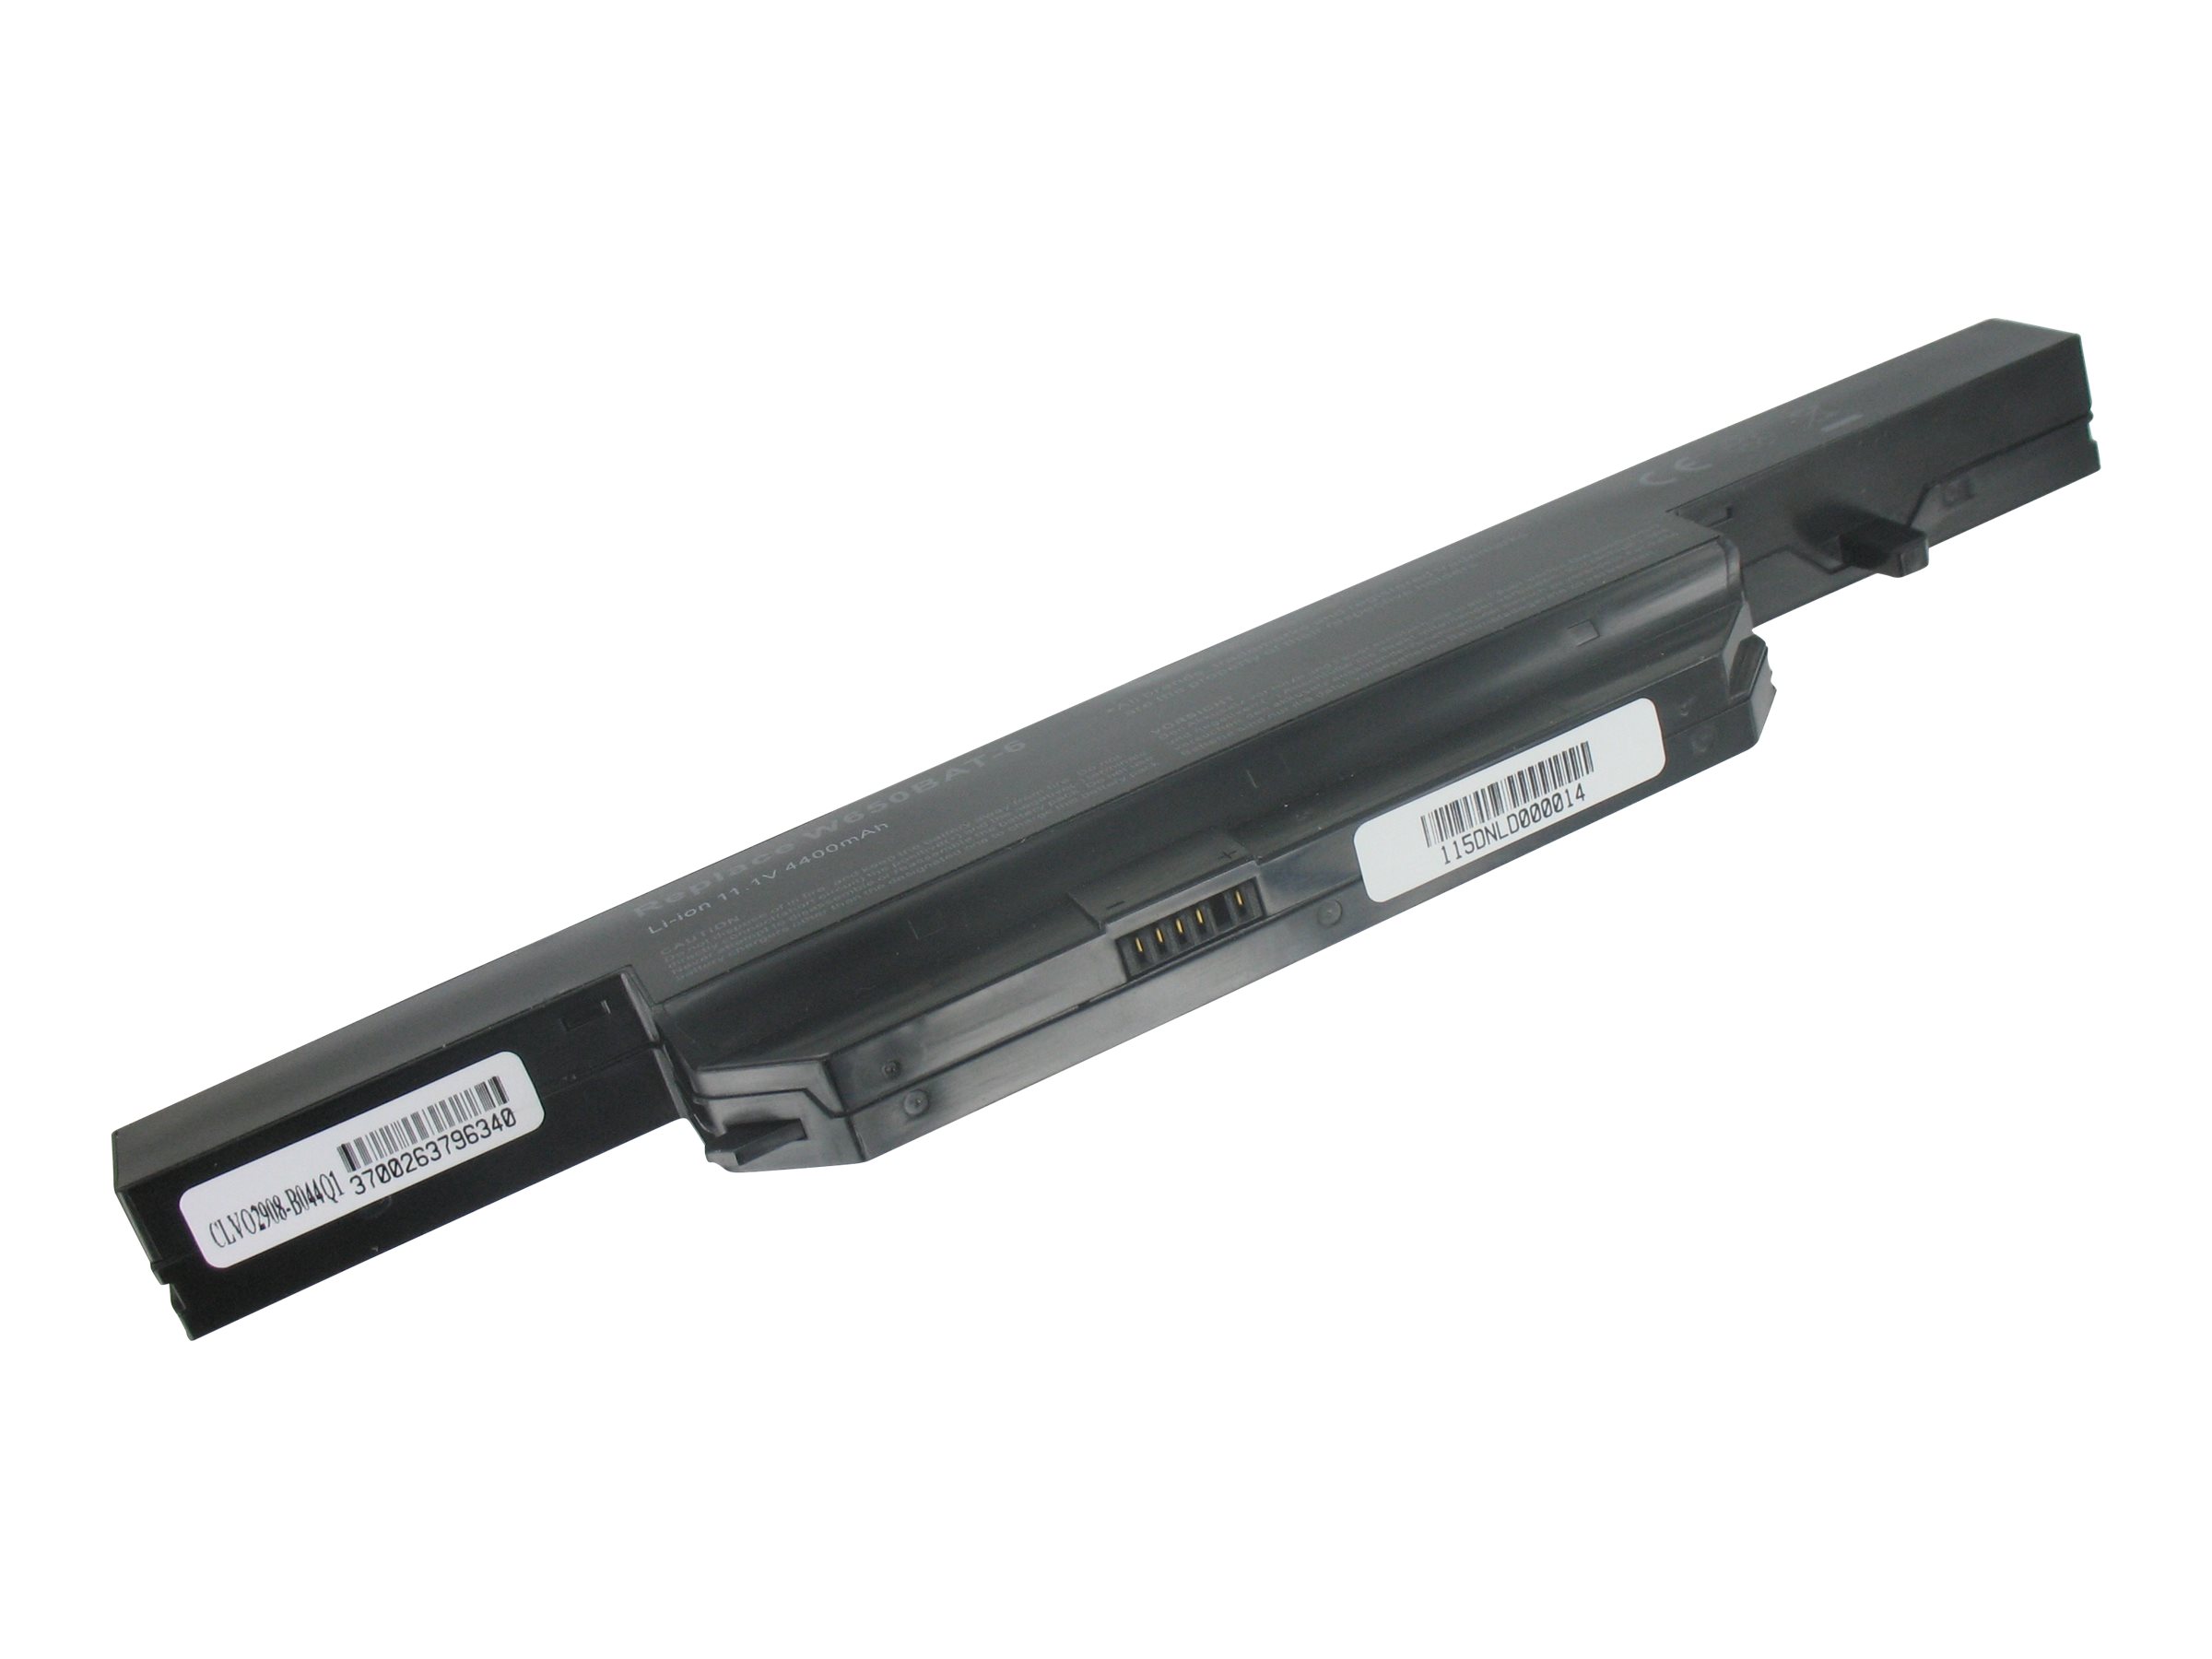 DLH - Batterie de portable (équivalent à : CLEVO W650BAT-6, CLEVO 6-87-W650S-4D4A2, CLEVO 6-87-W650S-4D7A2, CLEVO 6-87-W650S-4E7, CLEVO 6-87-W650S-4E72) - Lithium Ion - 6 cellules - 4400 mAh - 49 Wh - pour Gigabyte P15F; Wortmann TERRA Mobile 1548, 1749, 1749S, 1775 - CLVO2908-B044Q1 - Batteries spécifiques